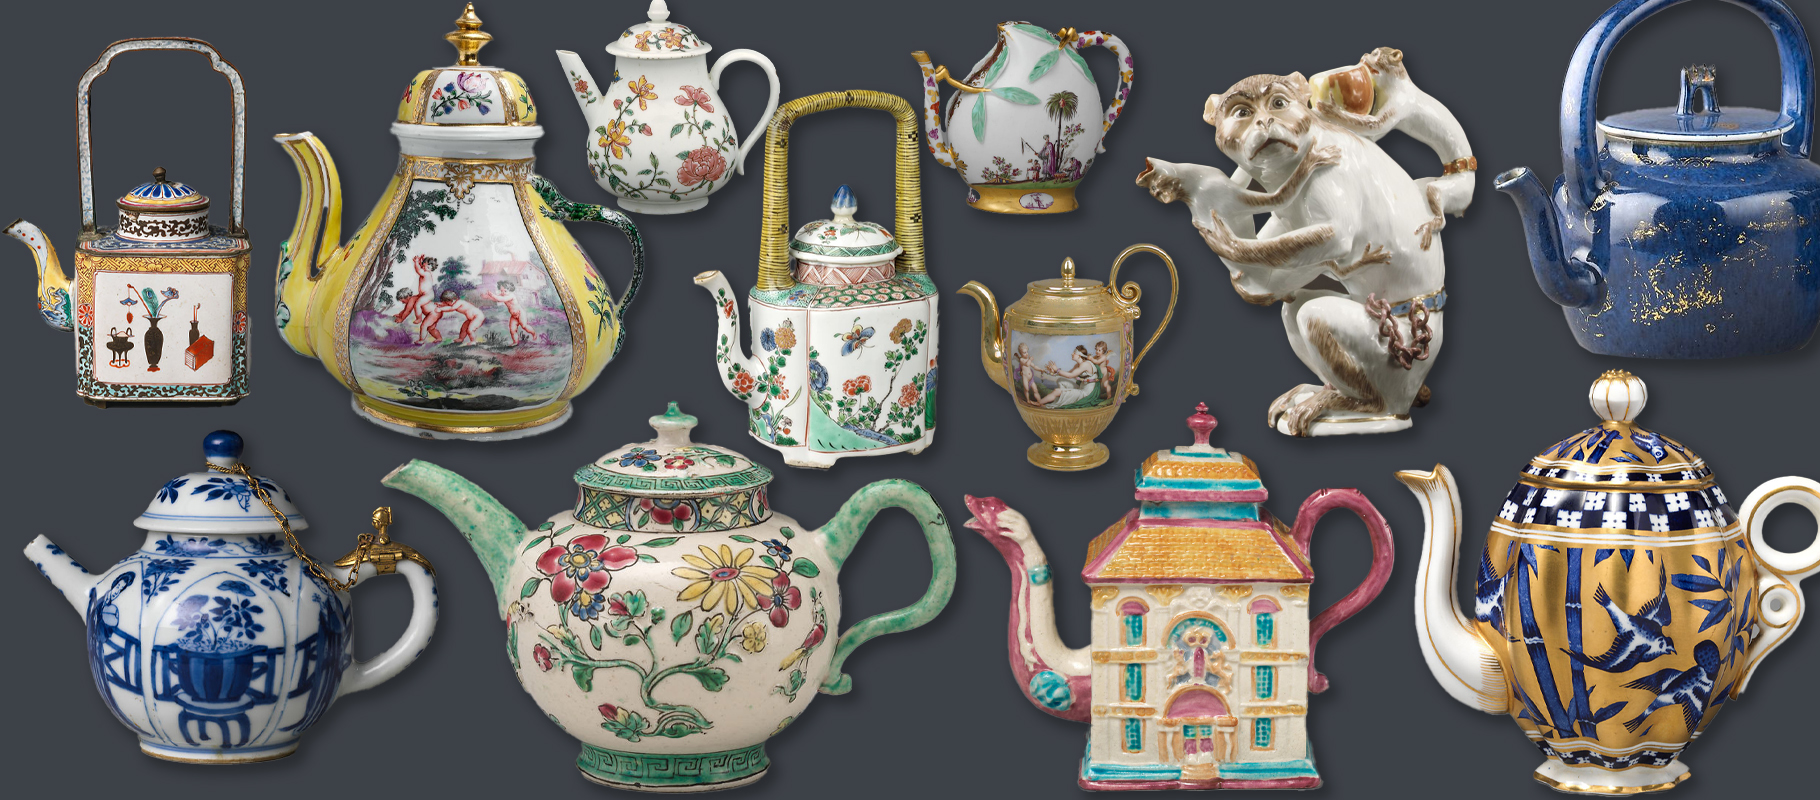 Antique teapot restoration